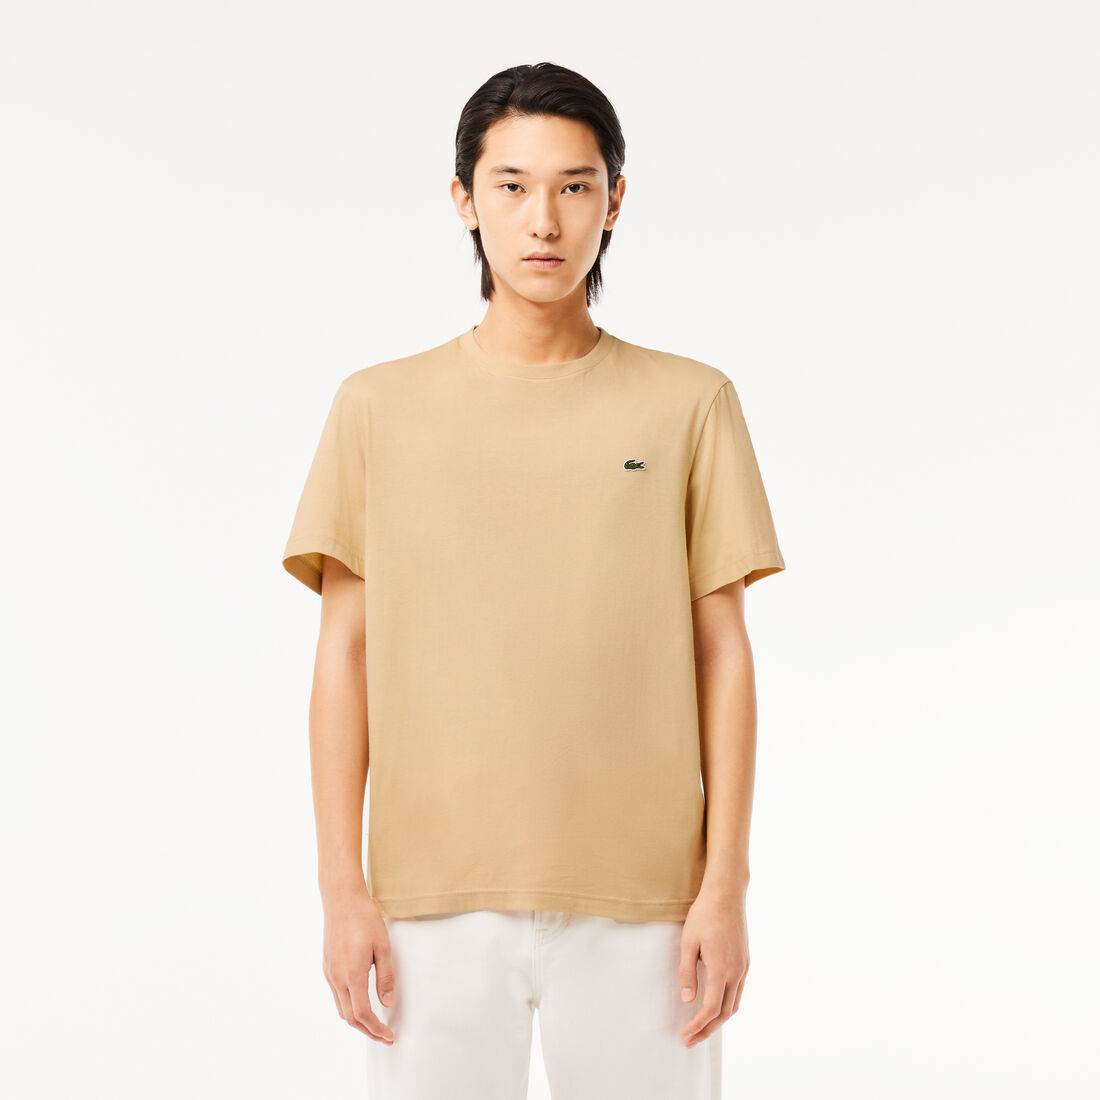 Men's Crew Neck Cotton T-shirt - TH2038-00-IXQ